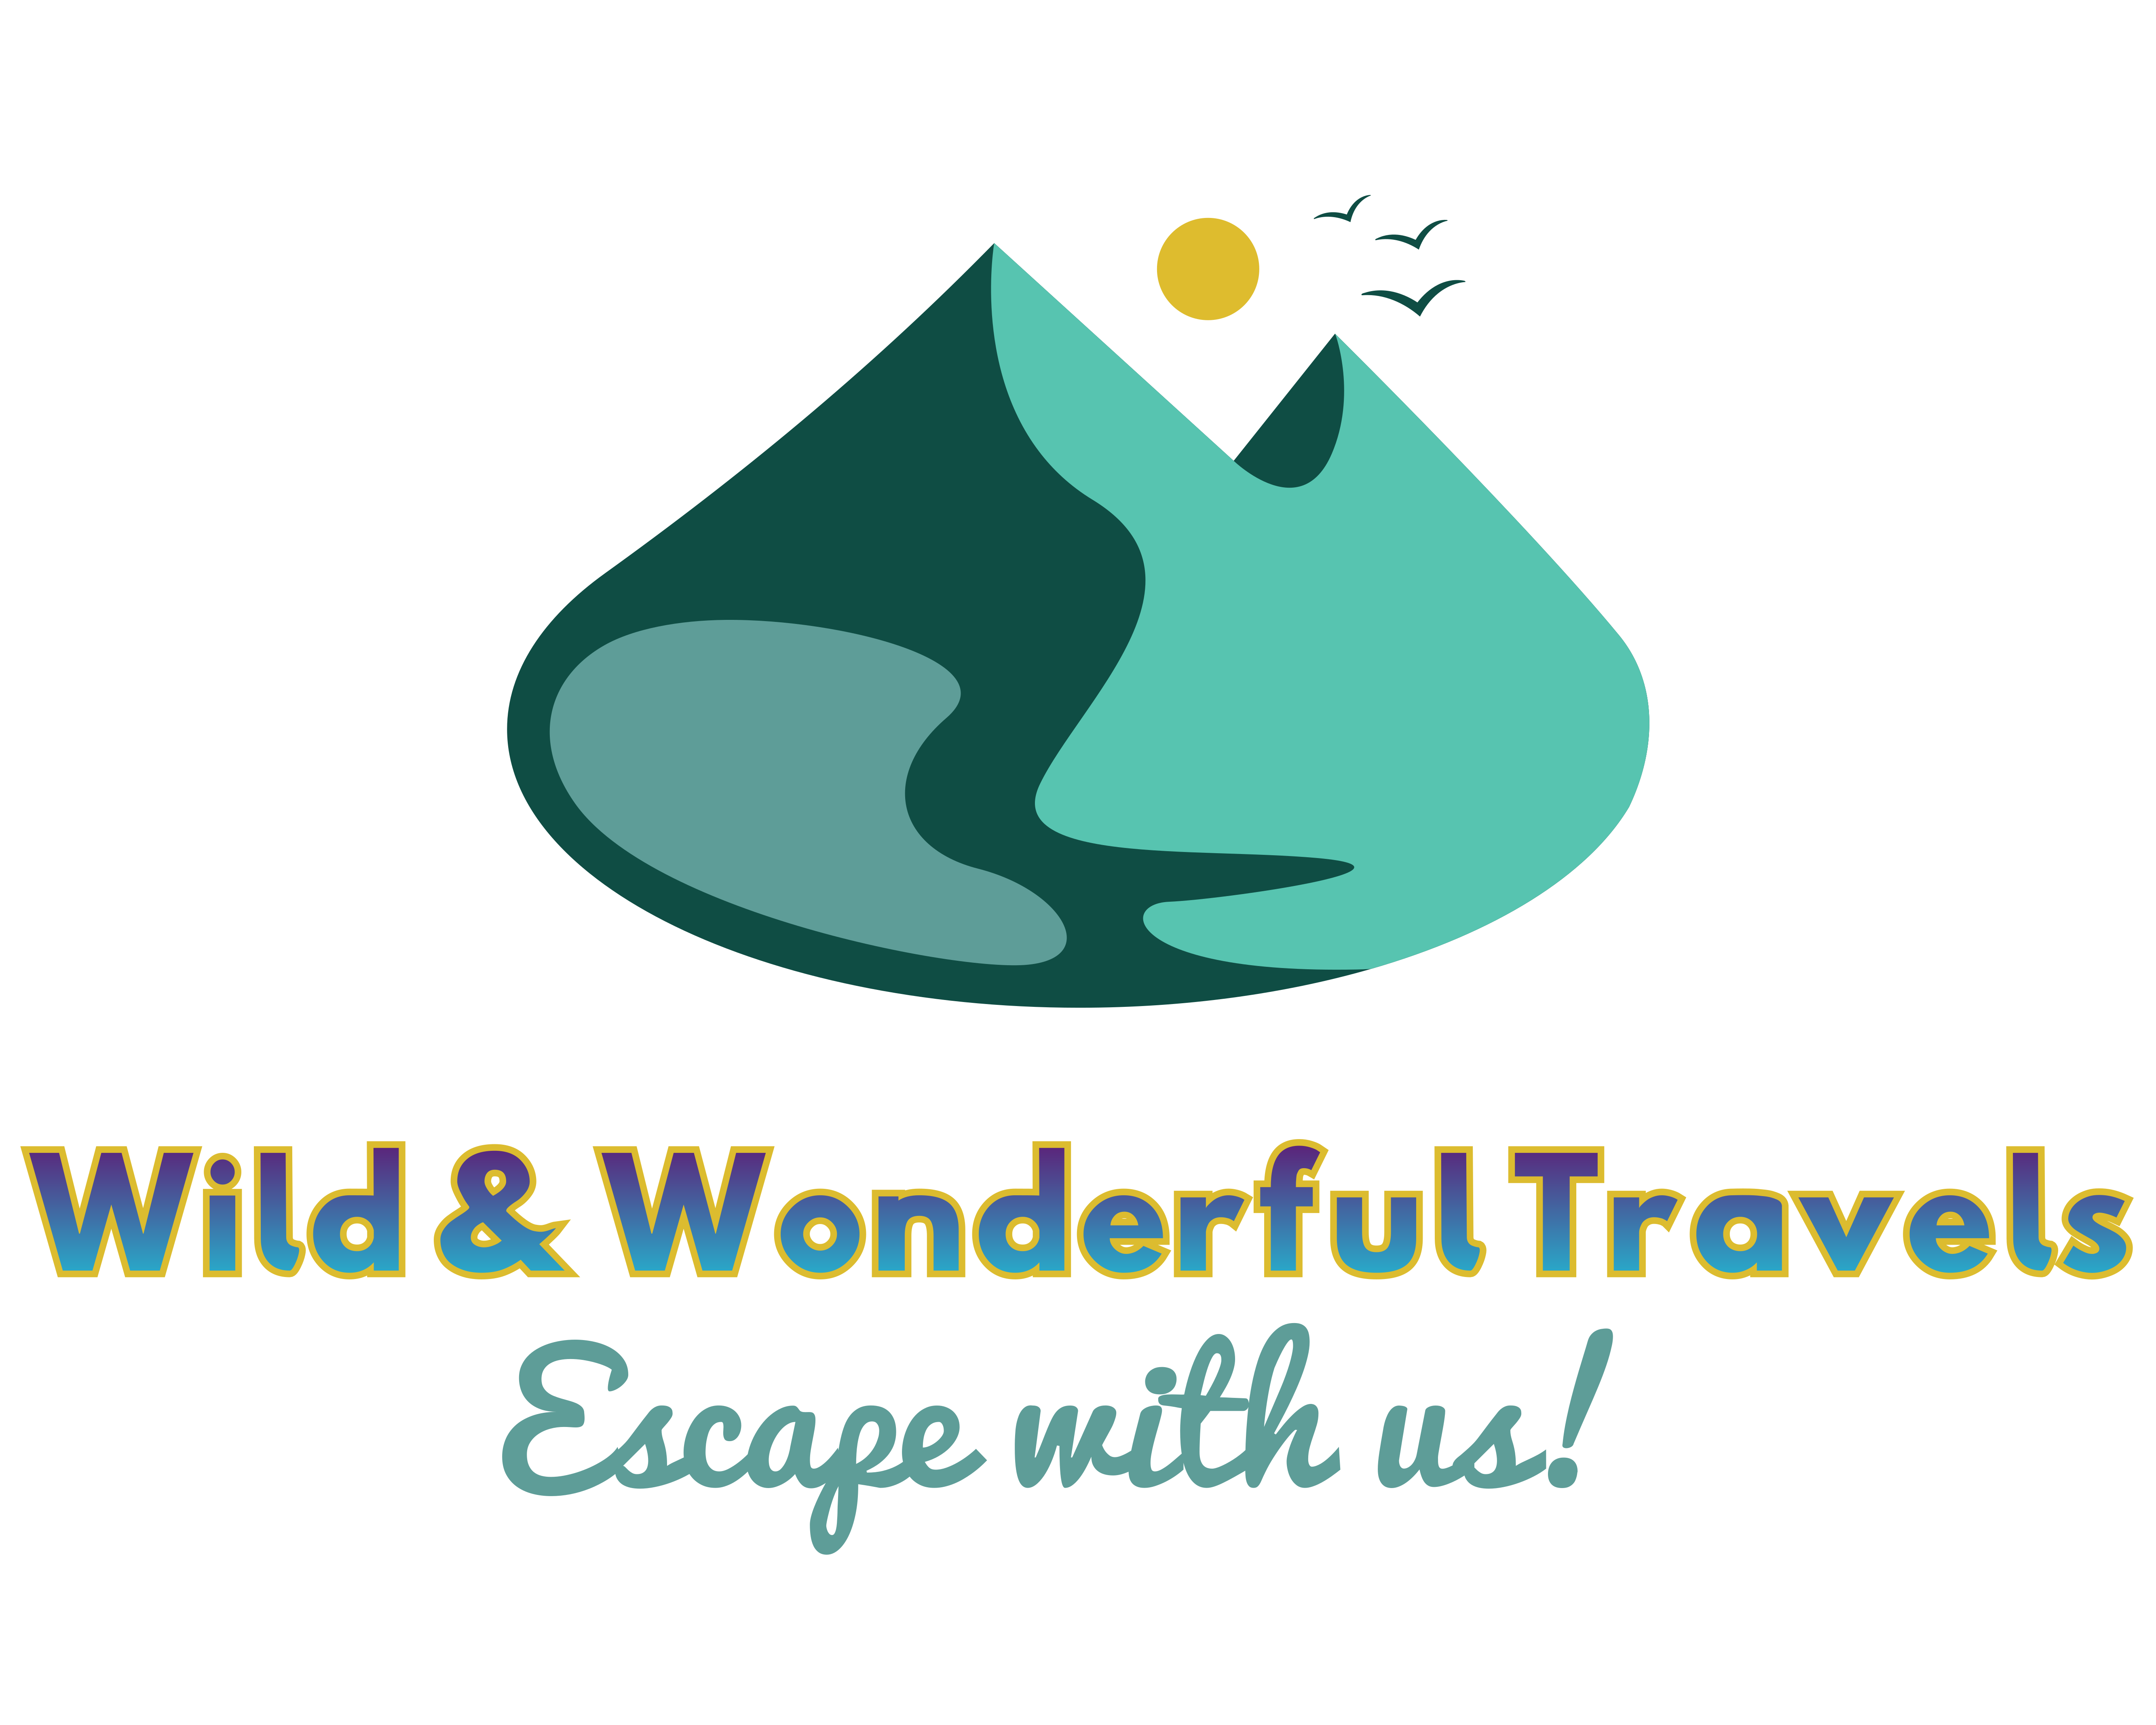 Wild & Wonderful Travels